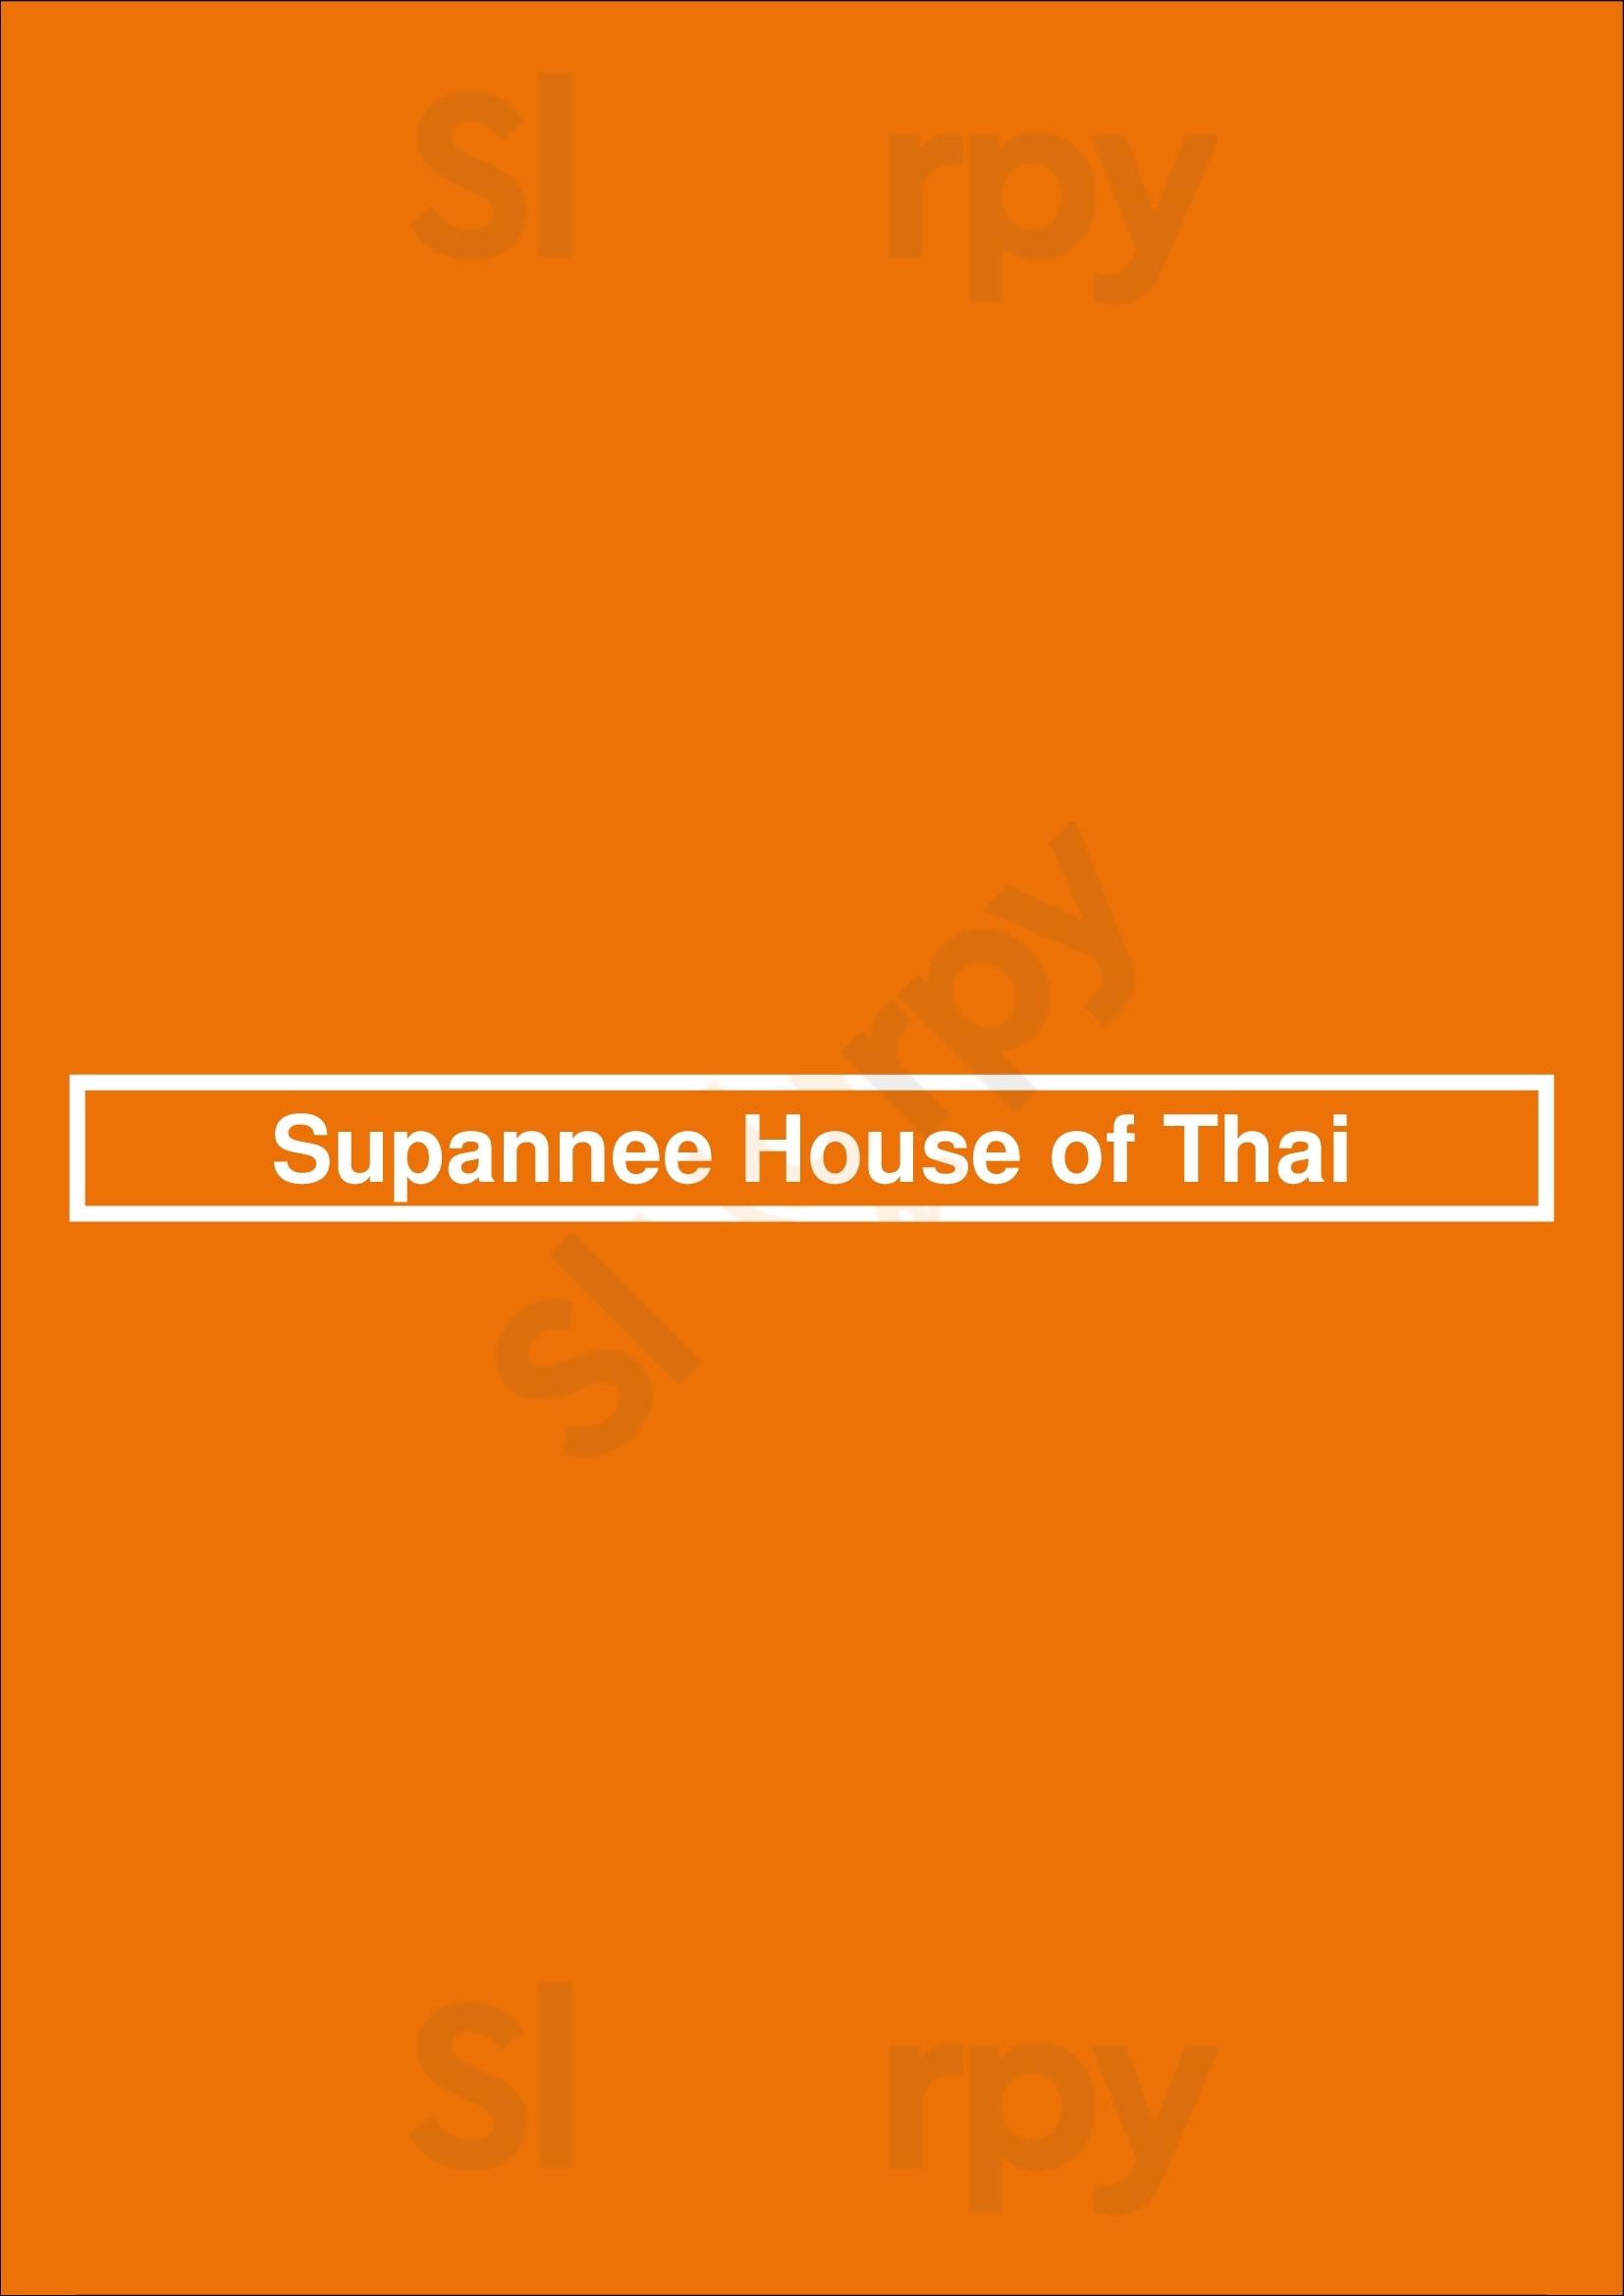 Supannee House Of Thai San Diego Menu - 1